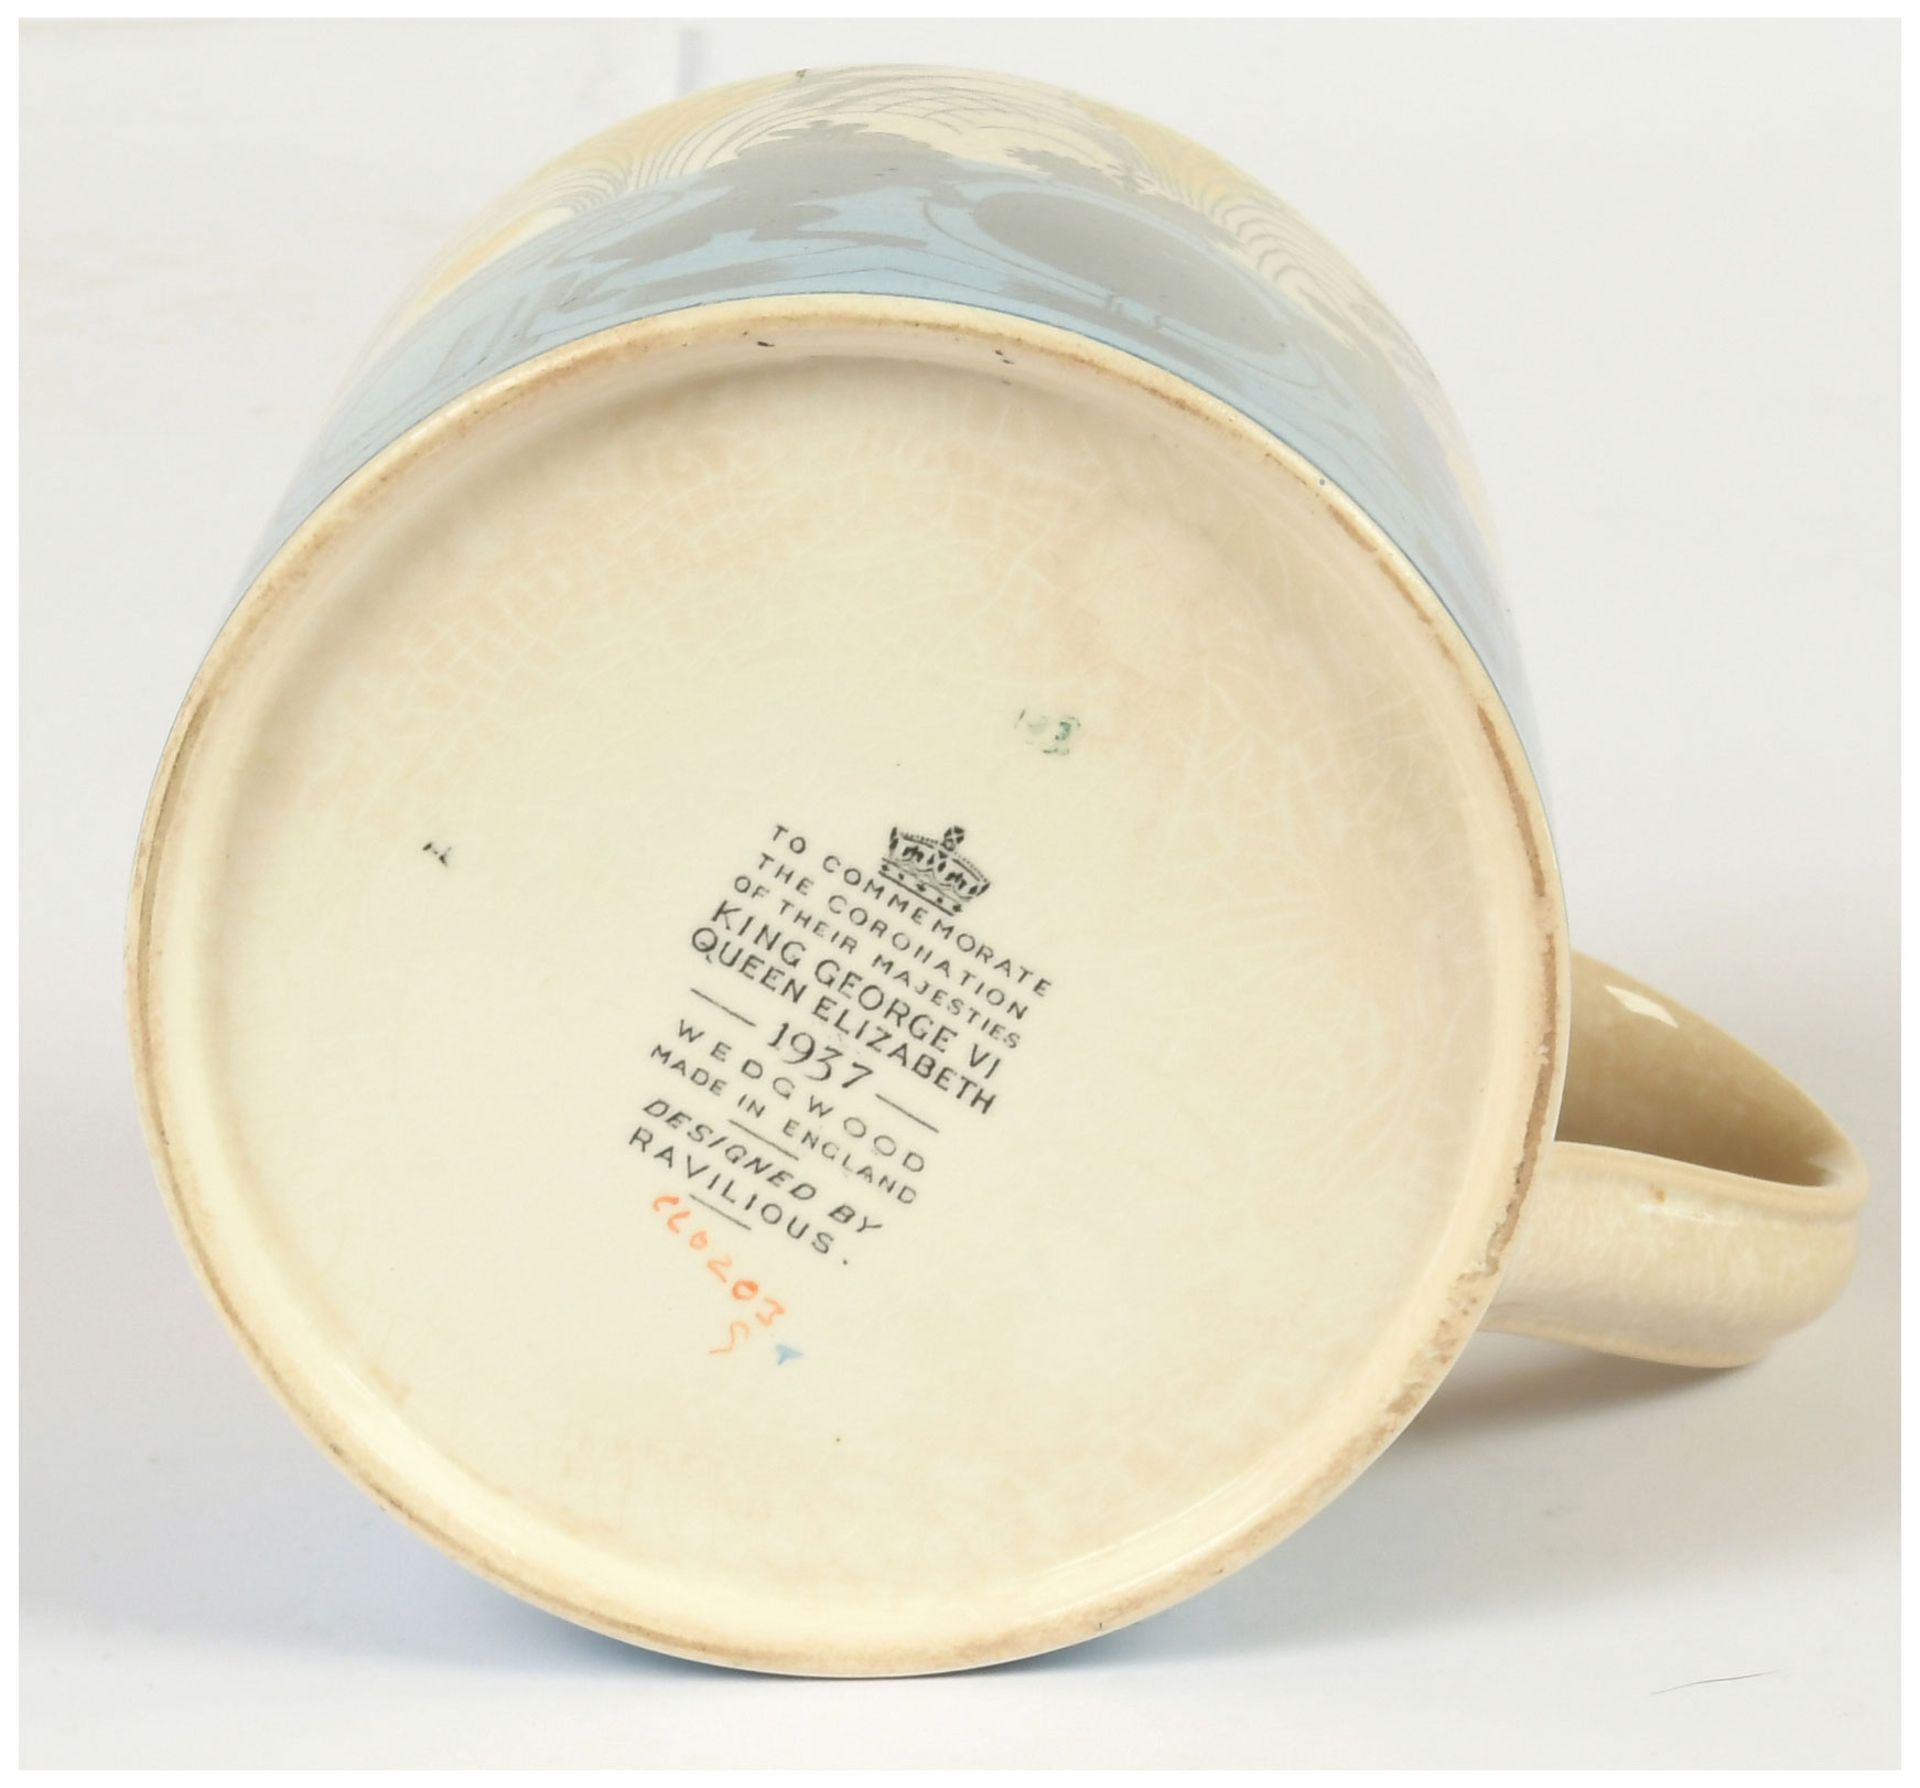 Wedgewood commemorative mug designed by Eric - Image 2 of 7